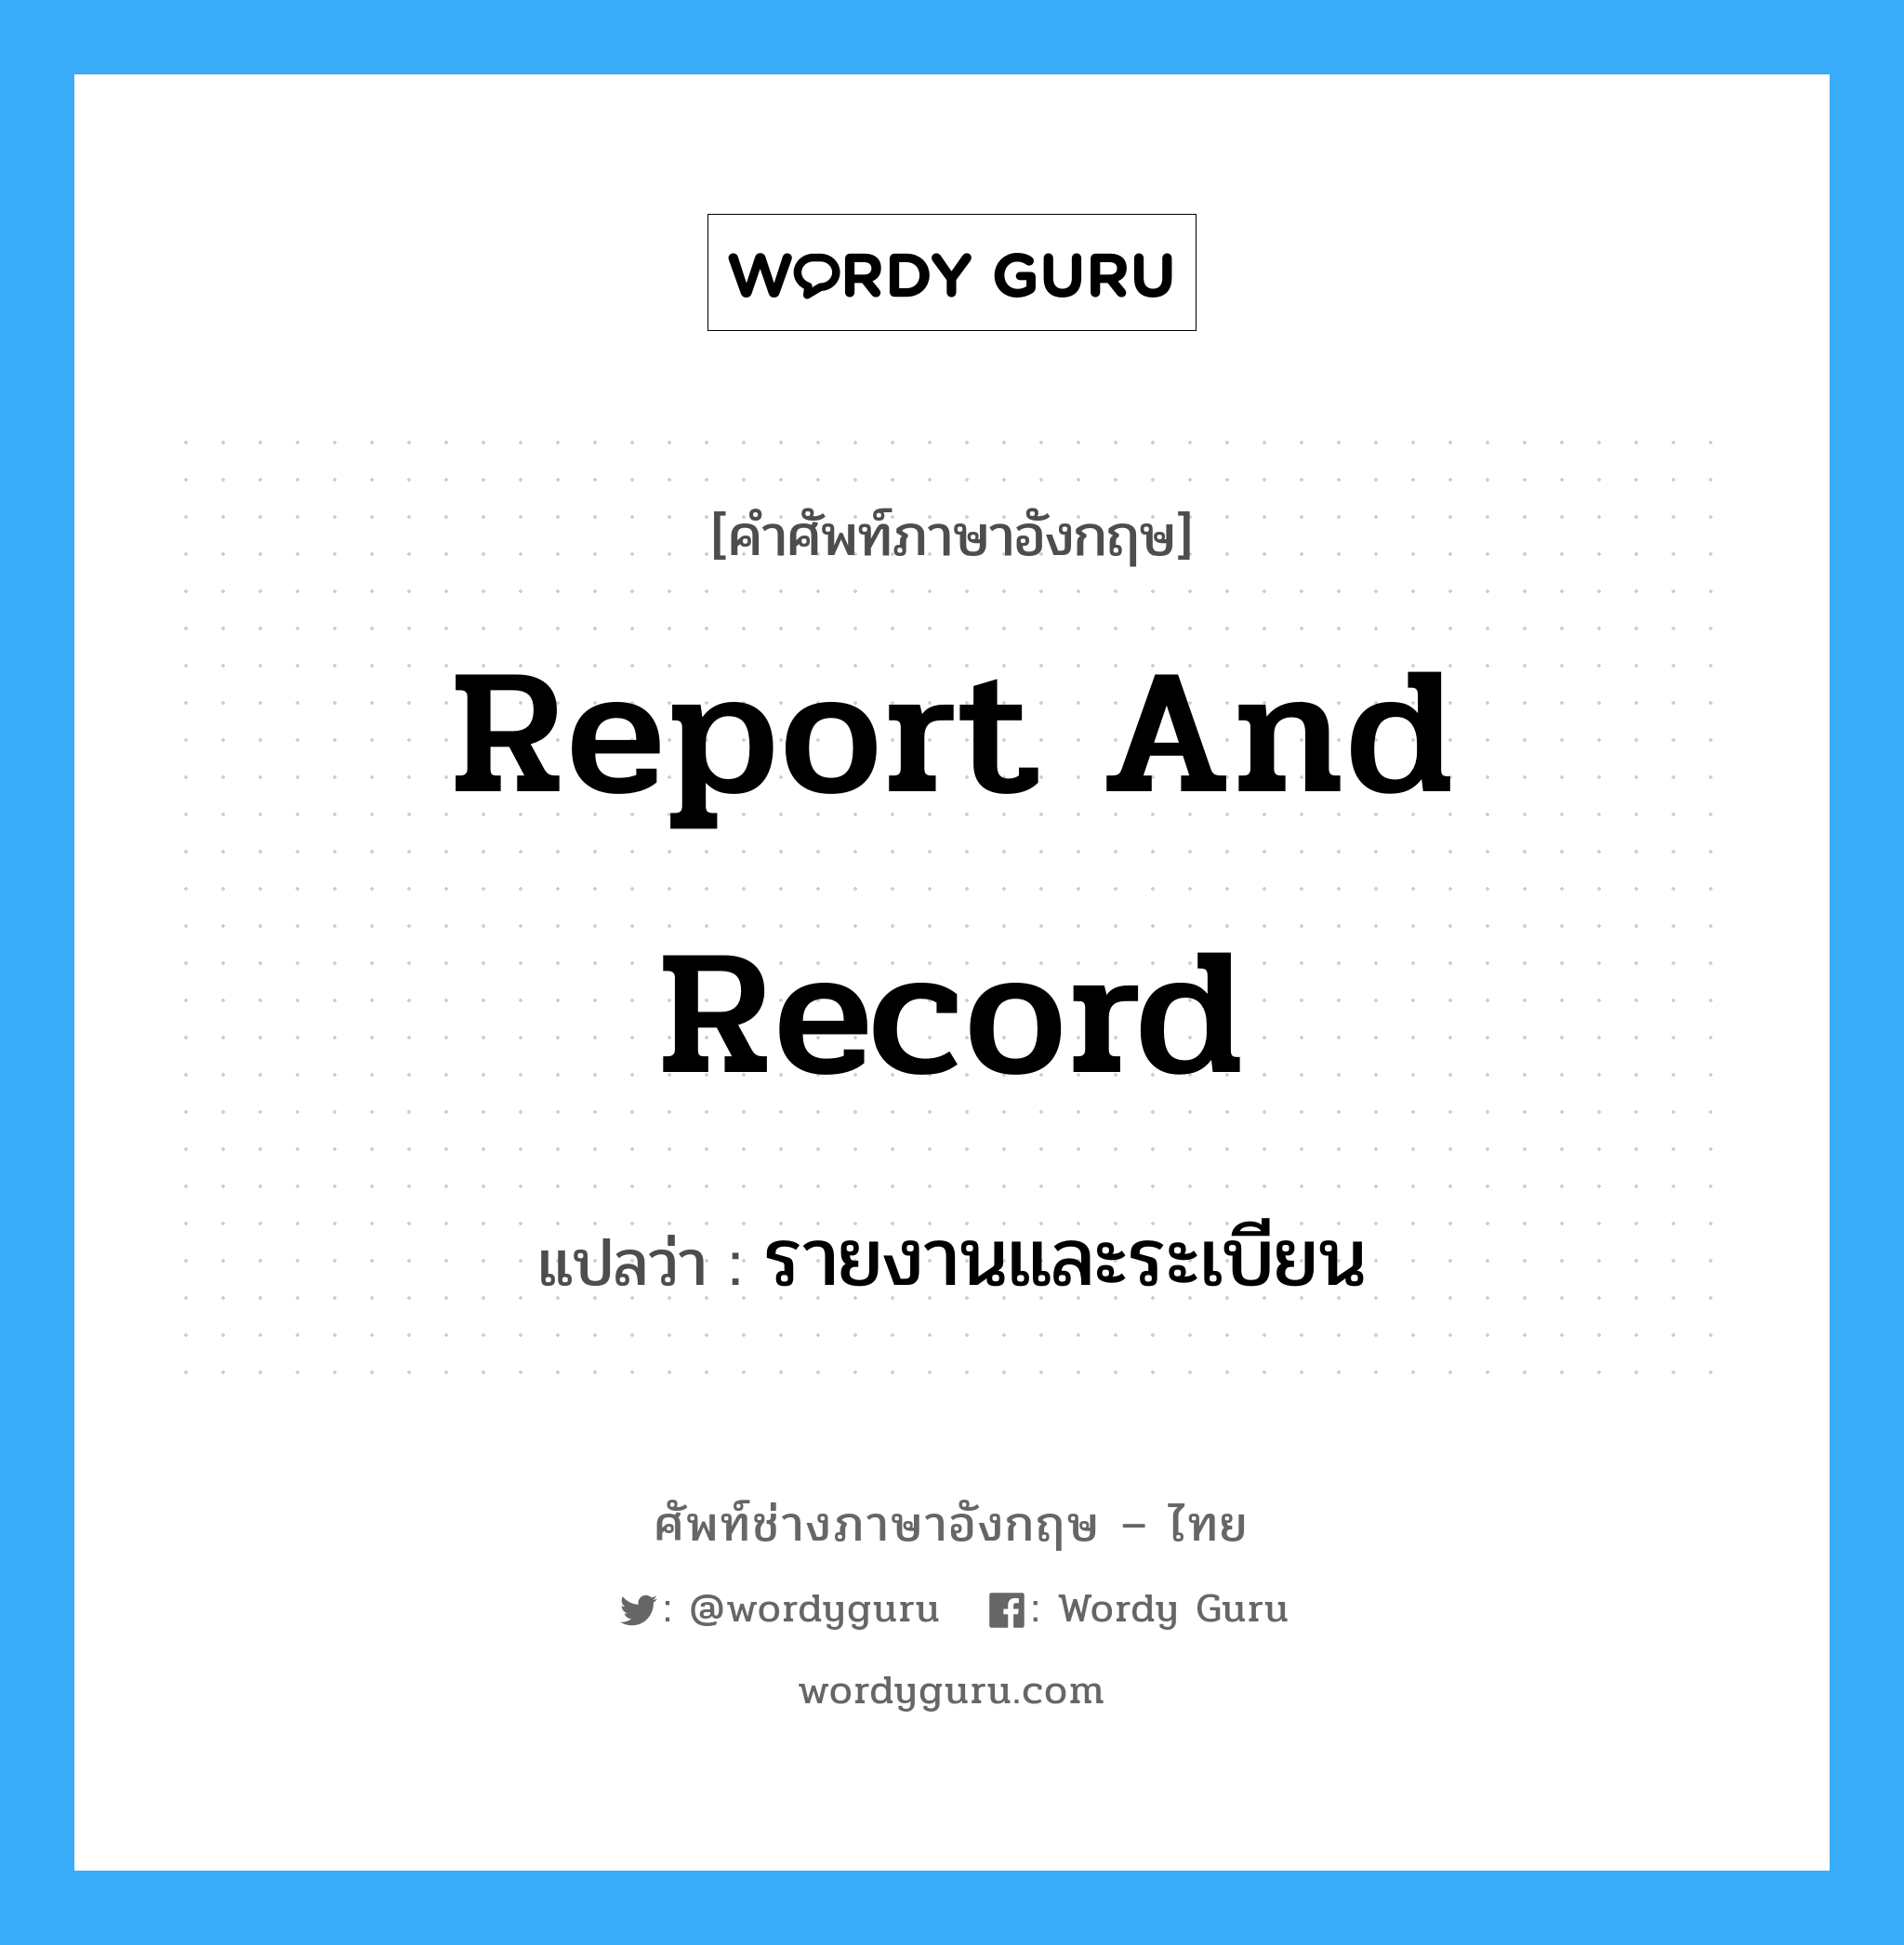 รายงานและระเบียน ภาษาอังกฤษ?, คำศัพท์ช่างภาษาอังกฤษ - ไทย รายงานและระเบียน คำศัพท์ภาษาอังกฤษ รายงานและระเบียน แปลว่า report and record